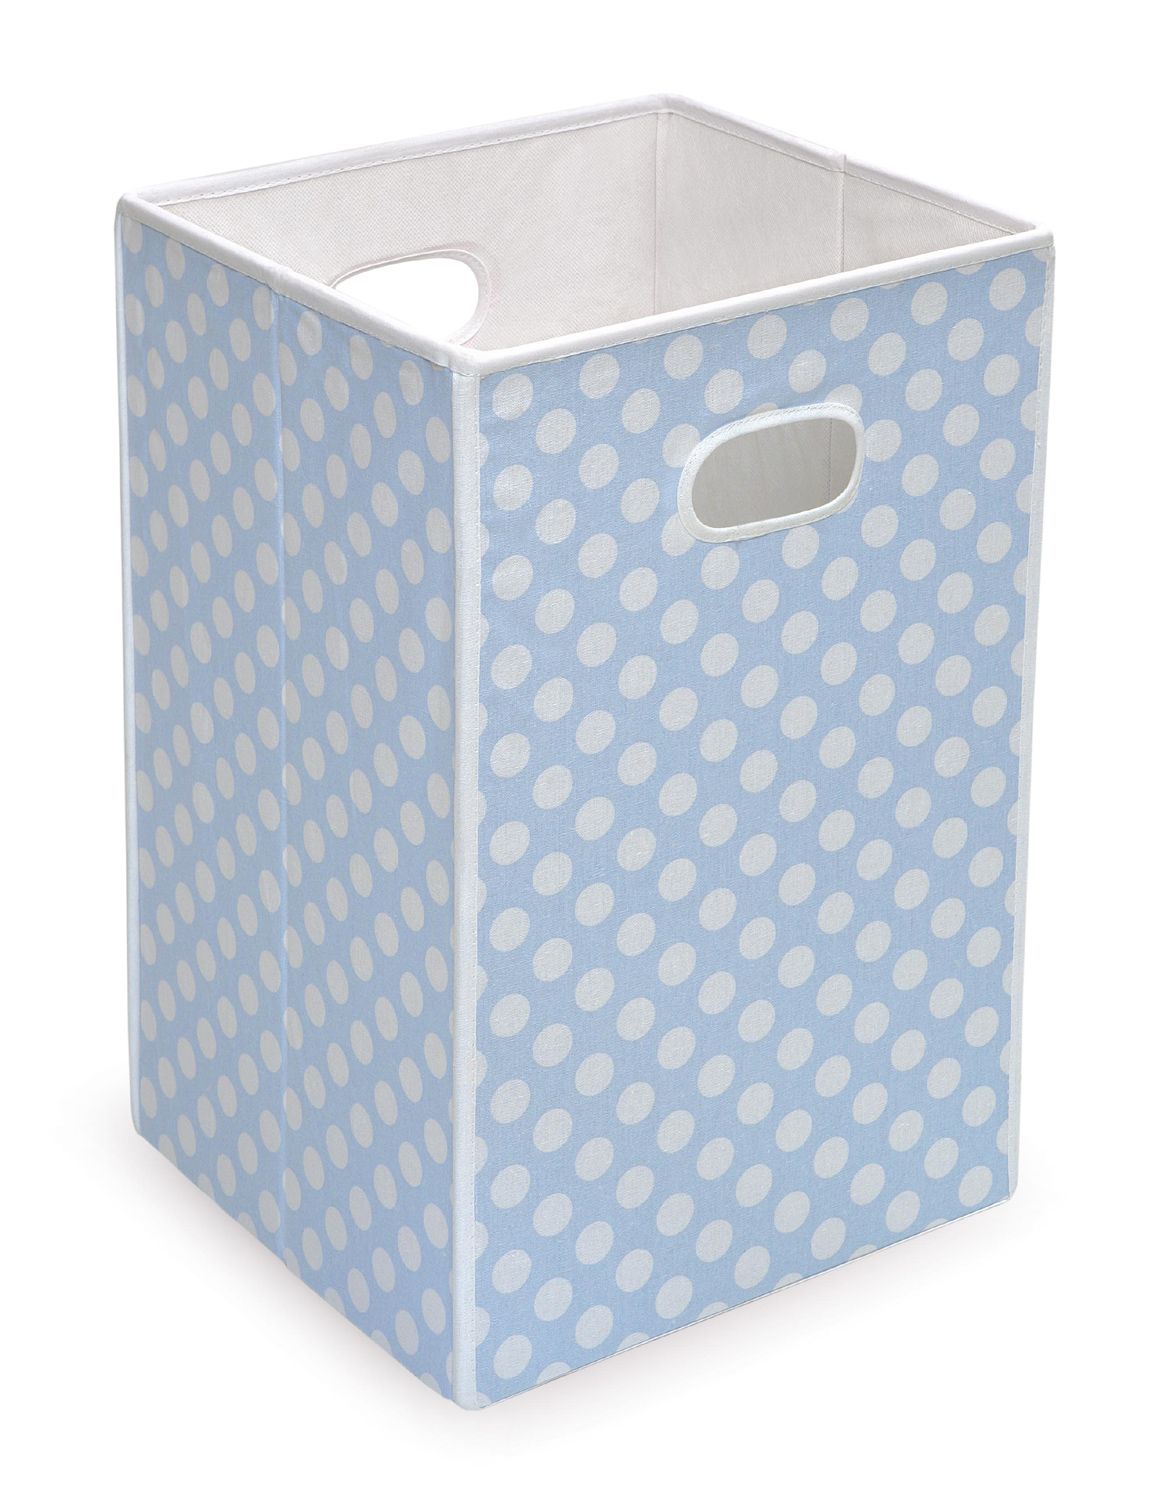 Badger Basket Folding Hamper/Storage Bin - Blue with White Polka Dots